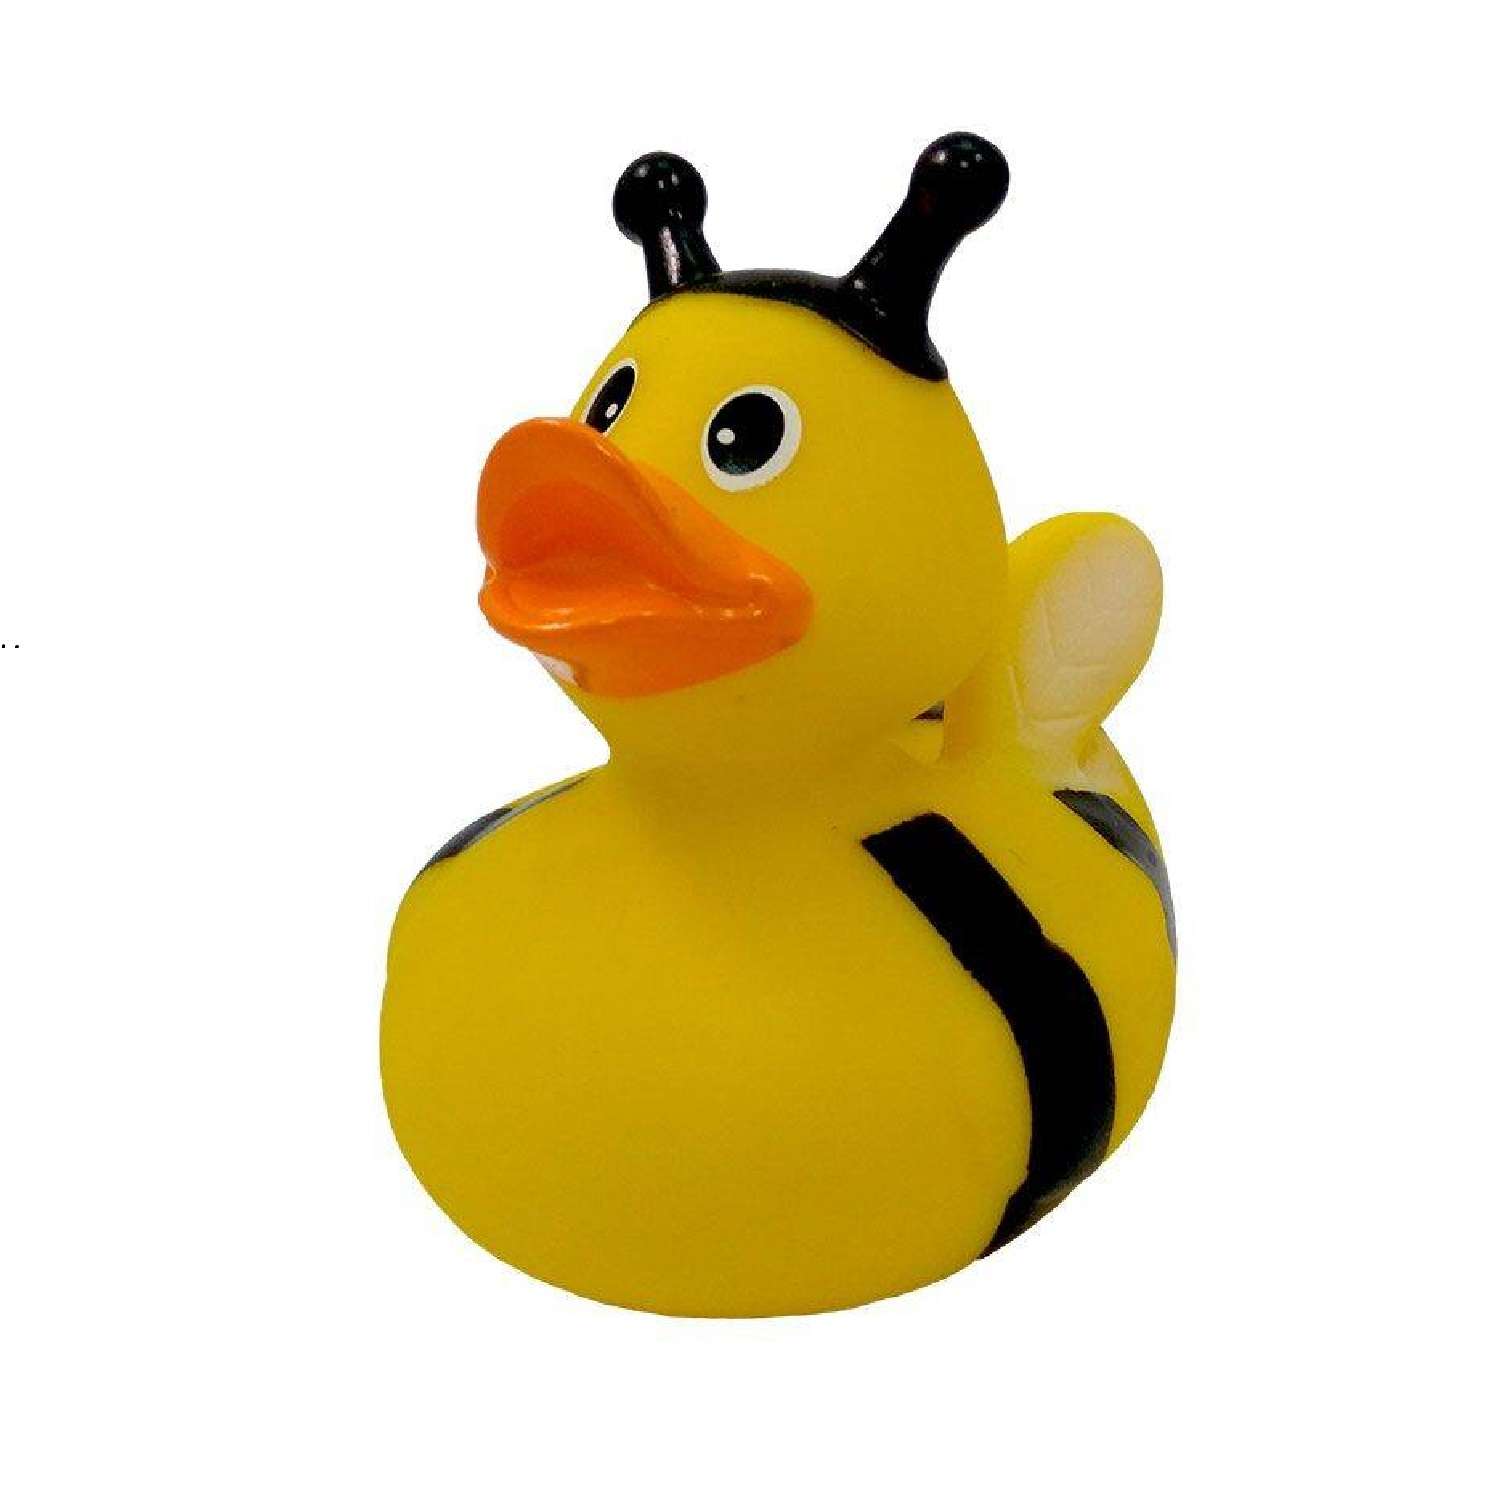 Игрушка Funny ducks для ванной Пчелка уточка 1890 - фото 1